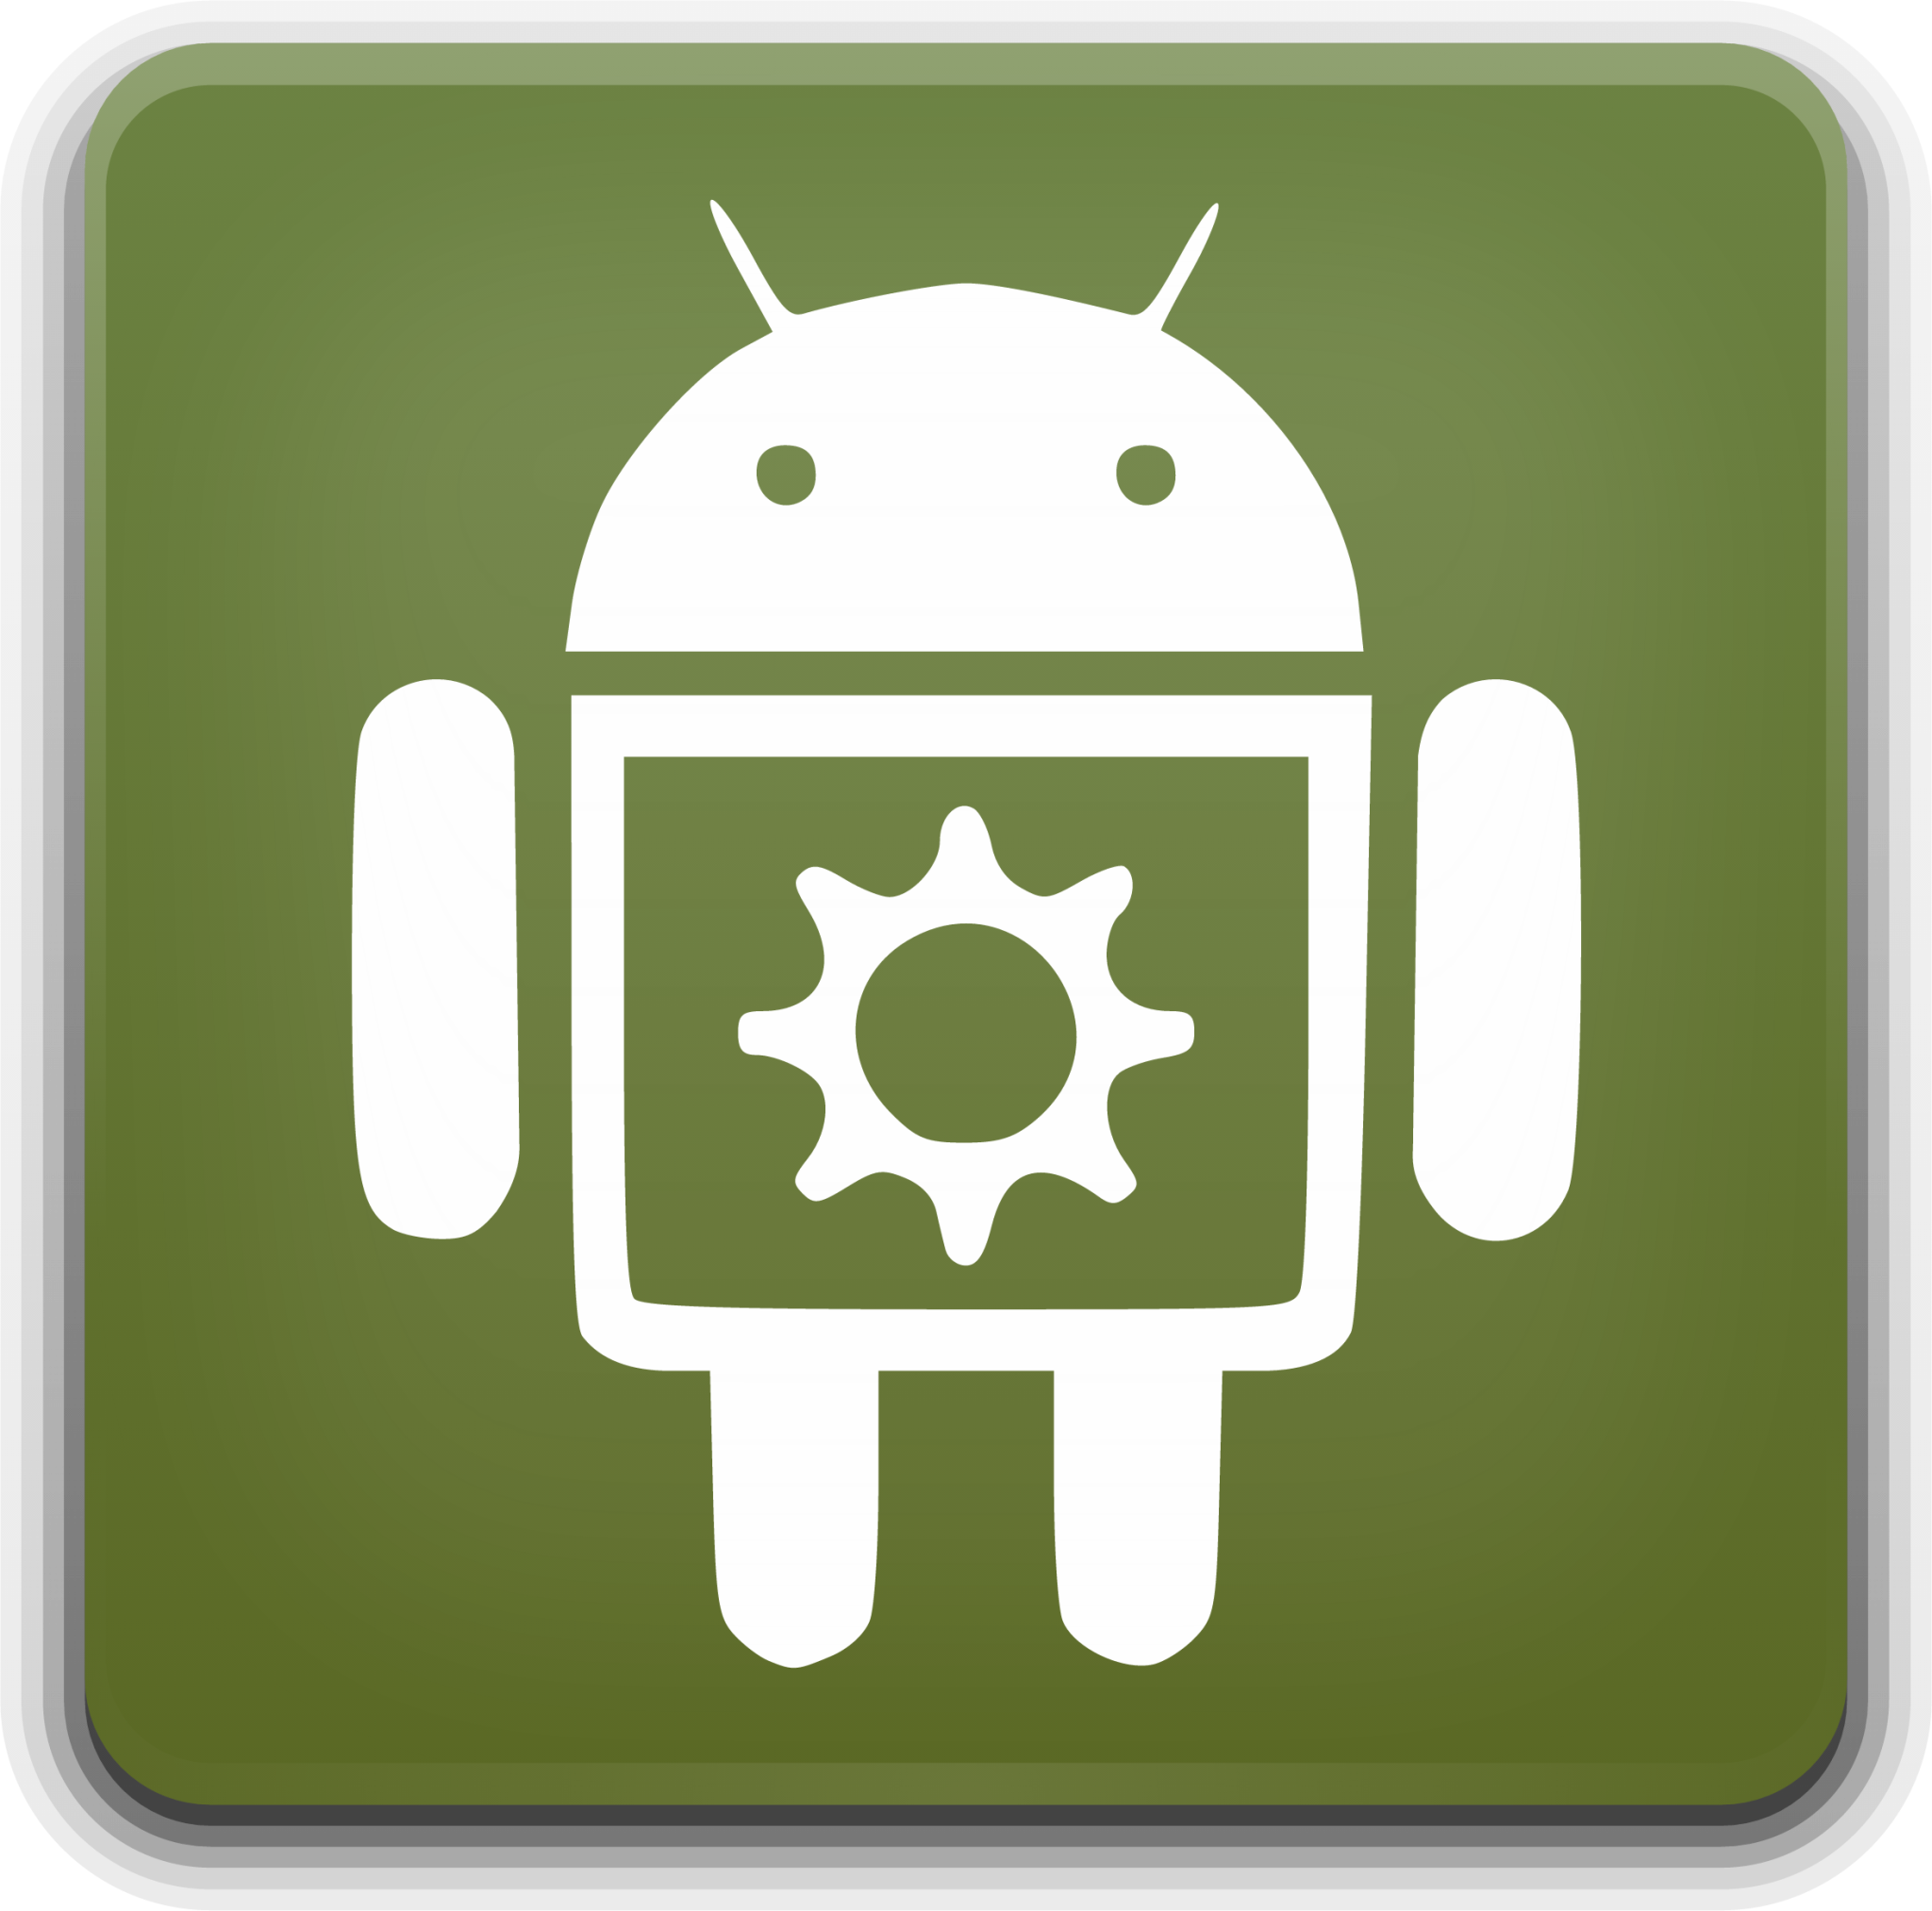 android studio icon